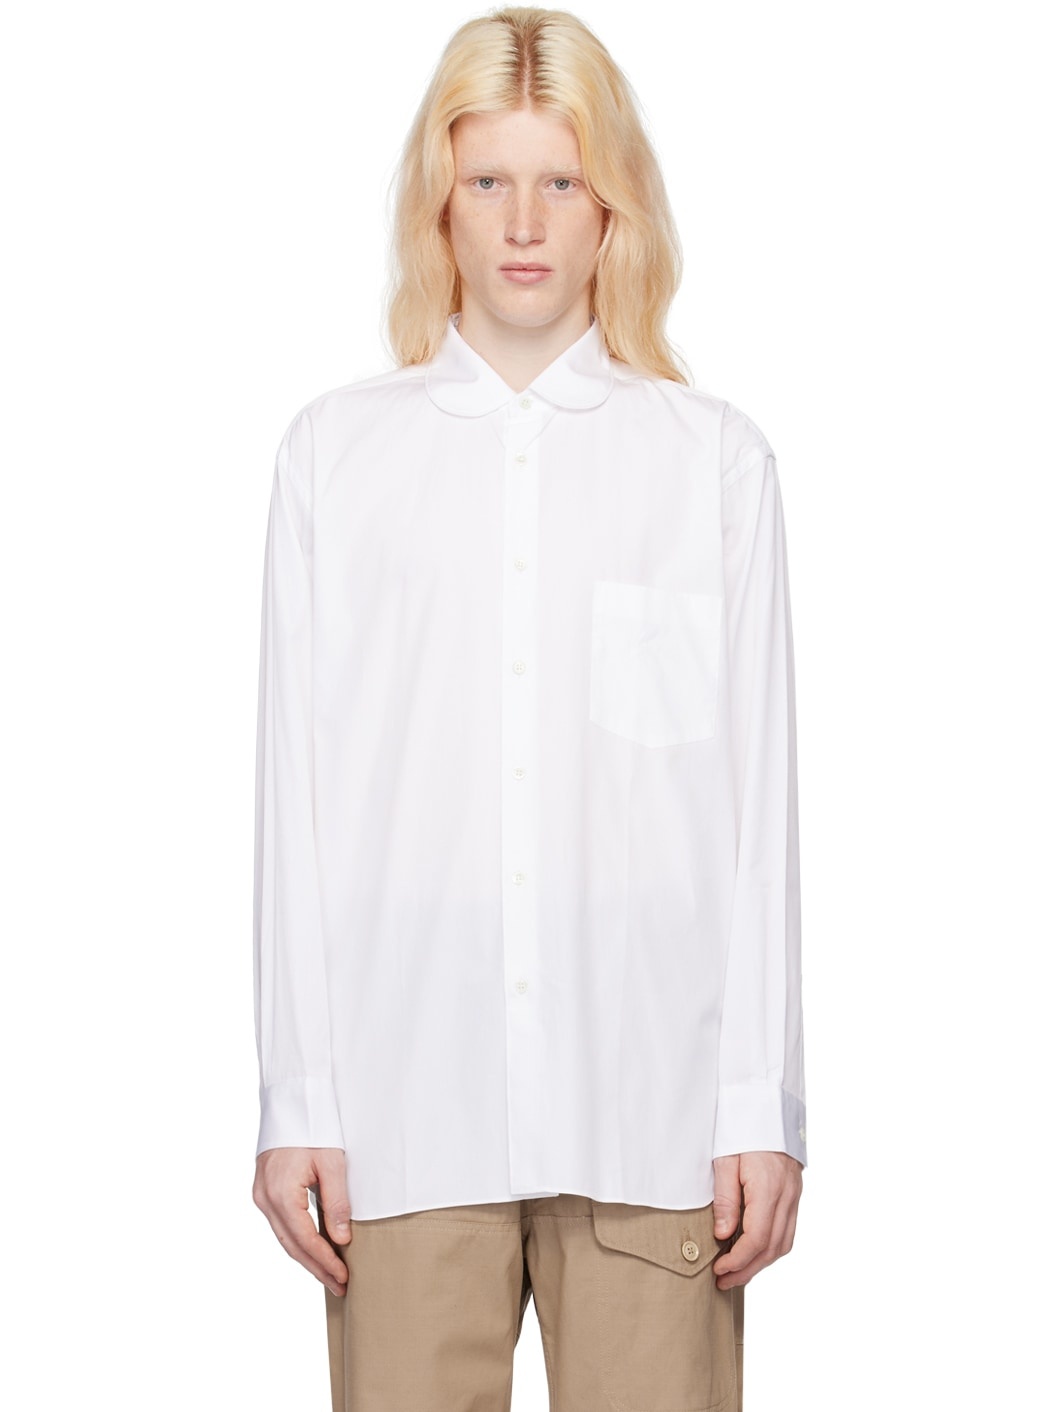 White Peter Pan Collar Shirt - 1